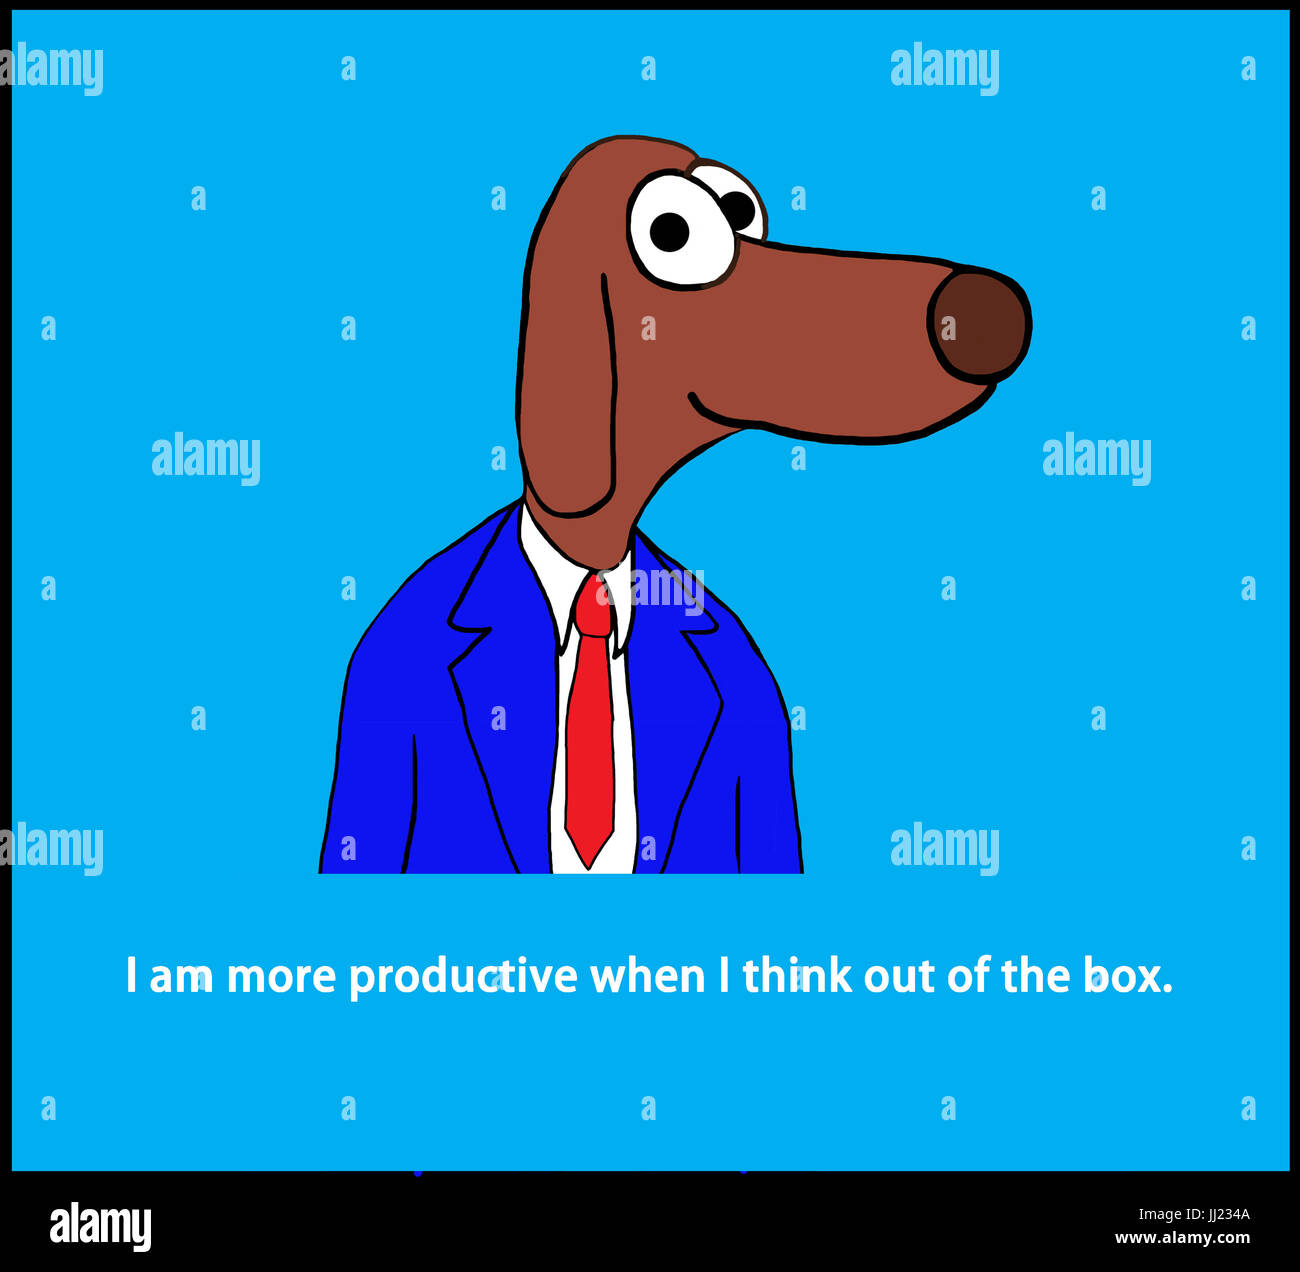 Geschäft Cartoon Illustration ein Arbeiter Hund und ein Wortspiel über das Denken "out of the Box". Stockfoto